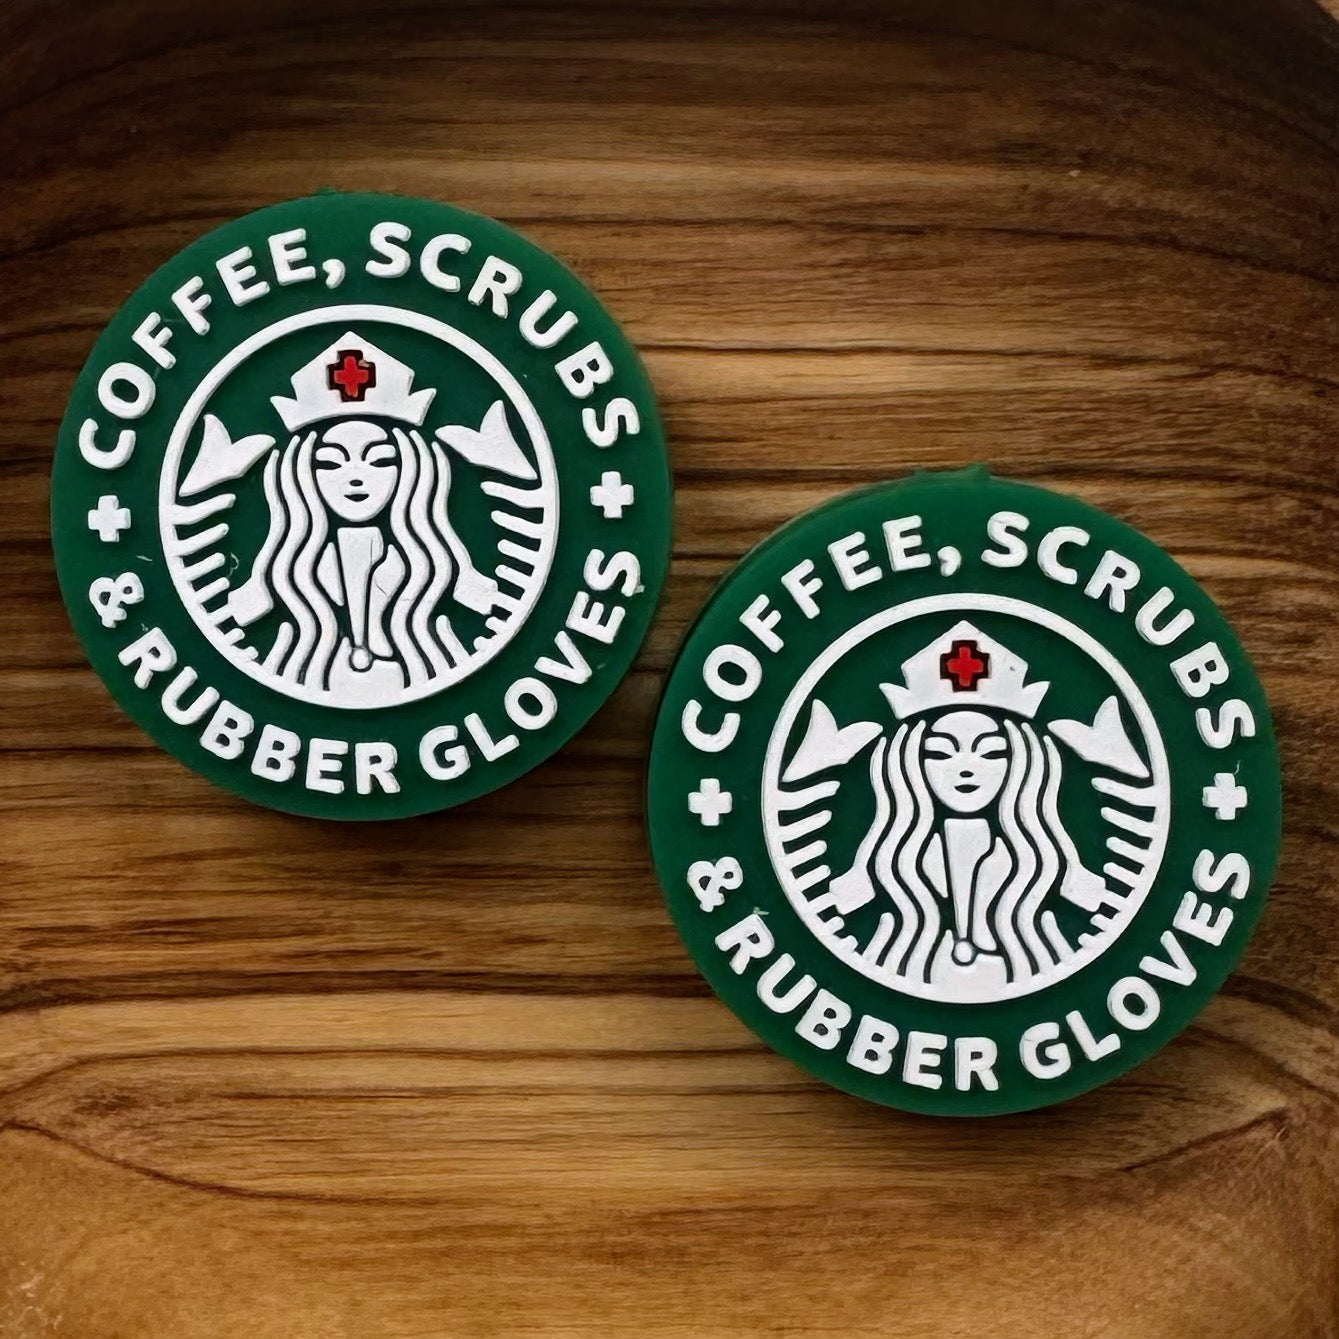 Coffee, Scrubs, Rubber Gloves Logo Focal